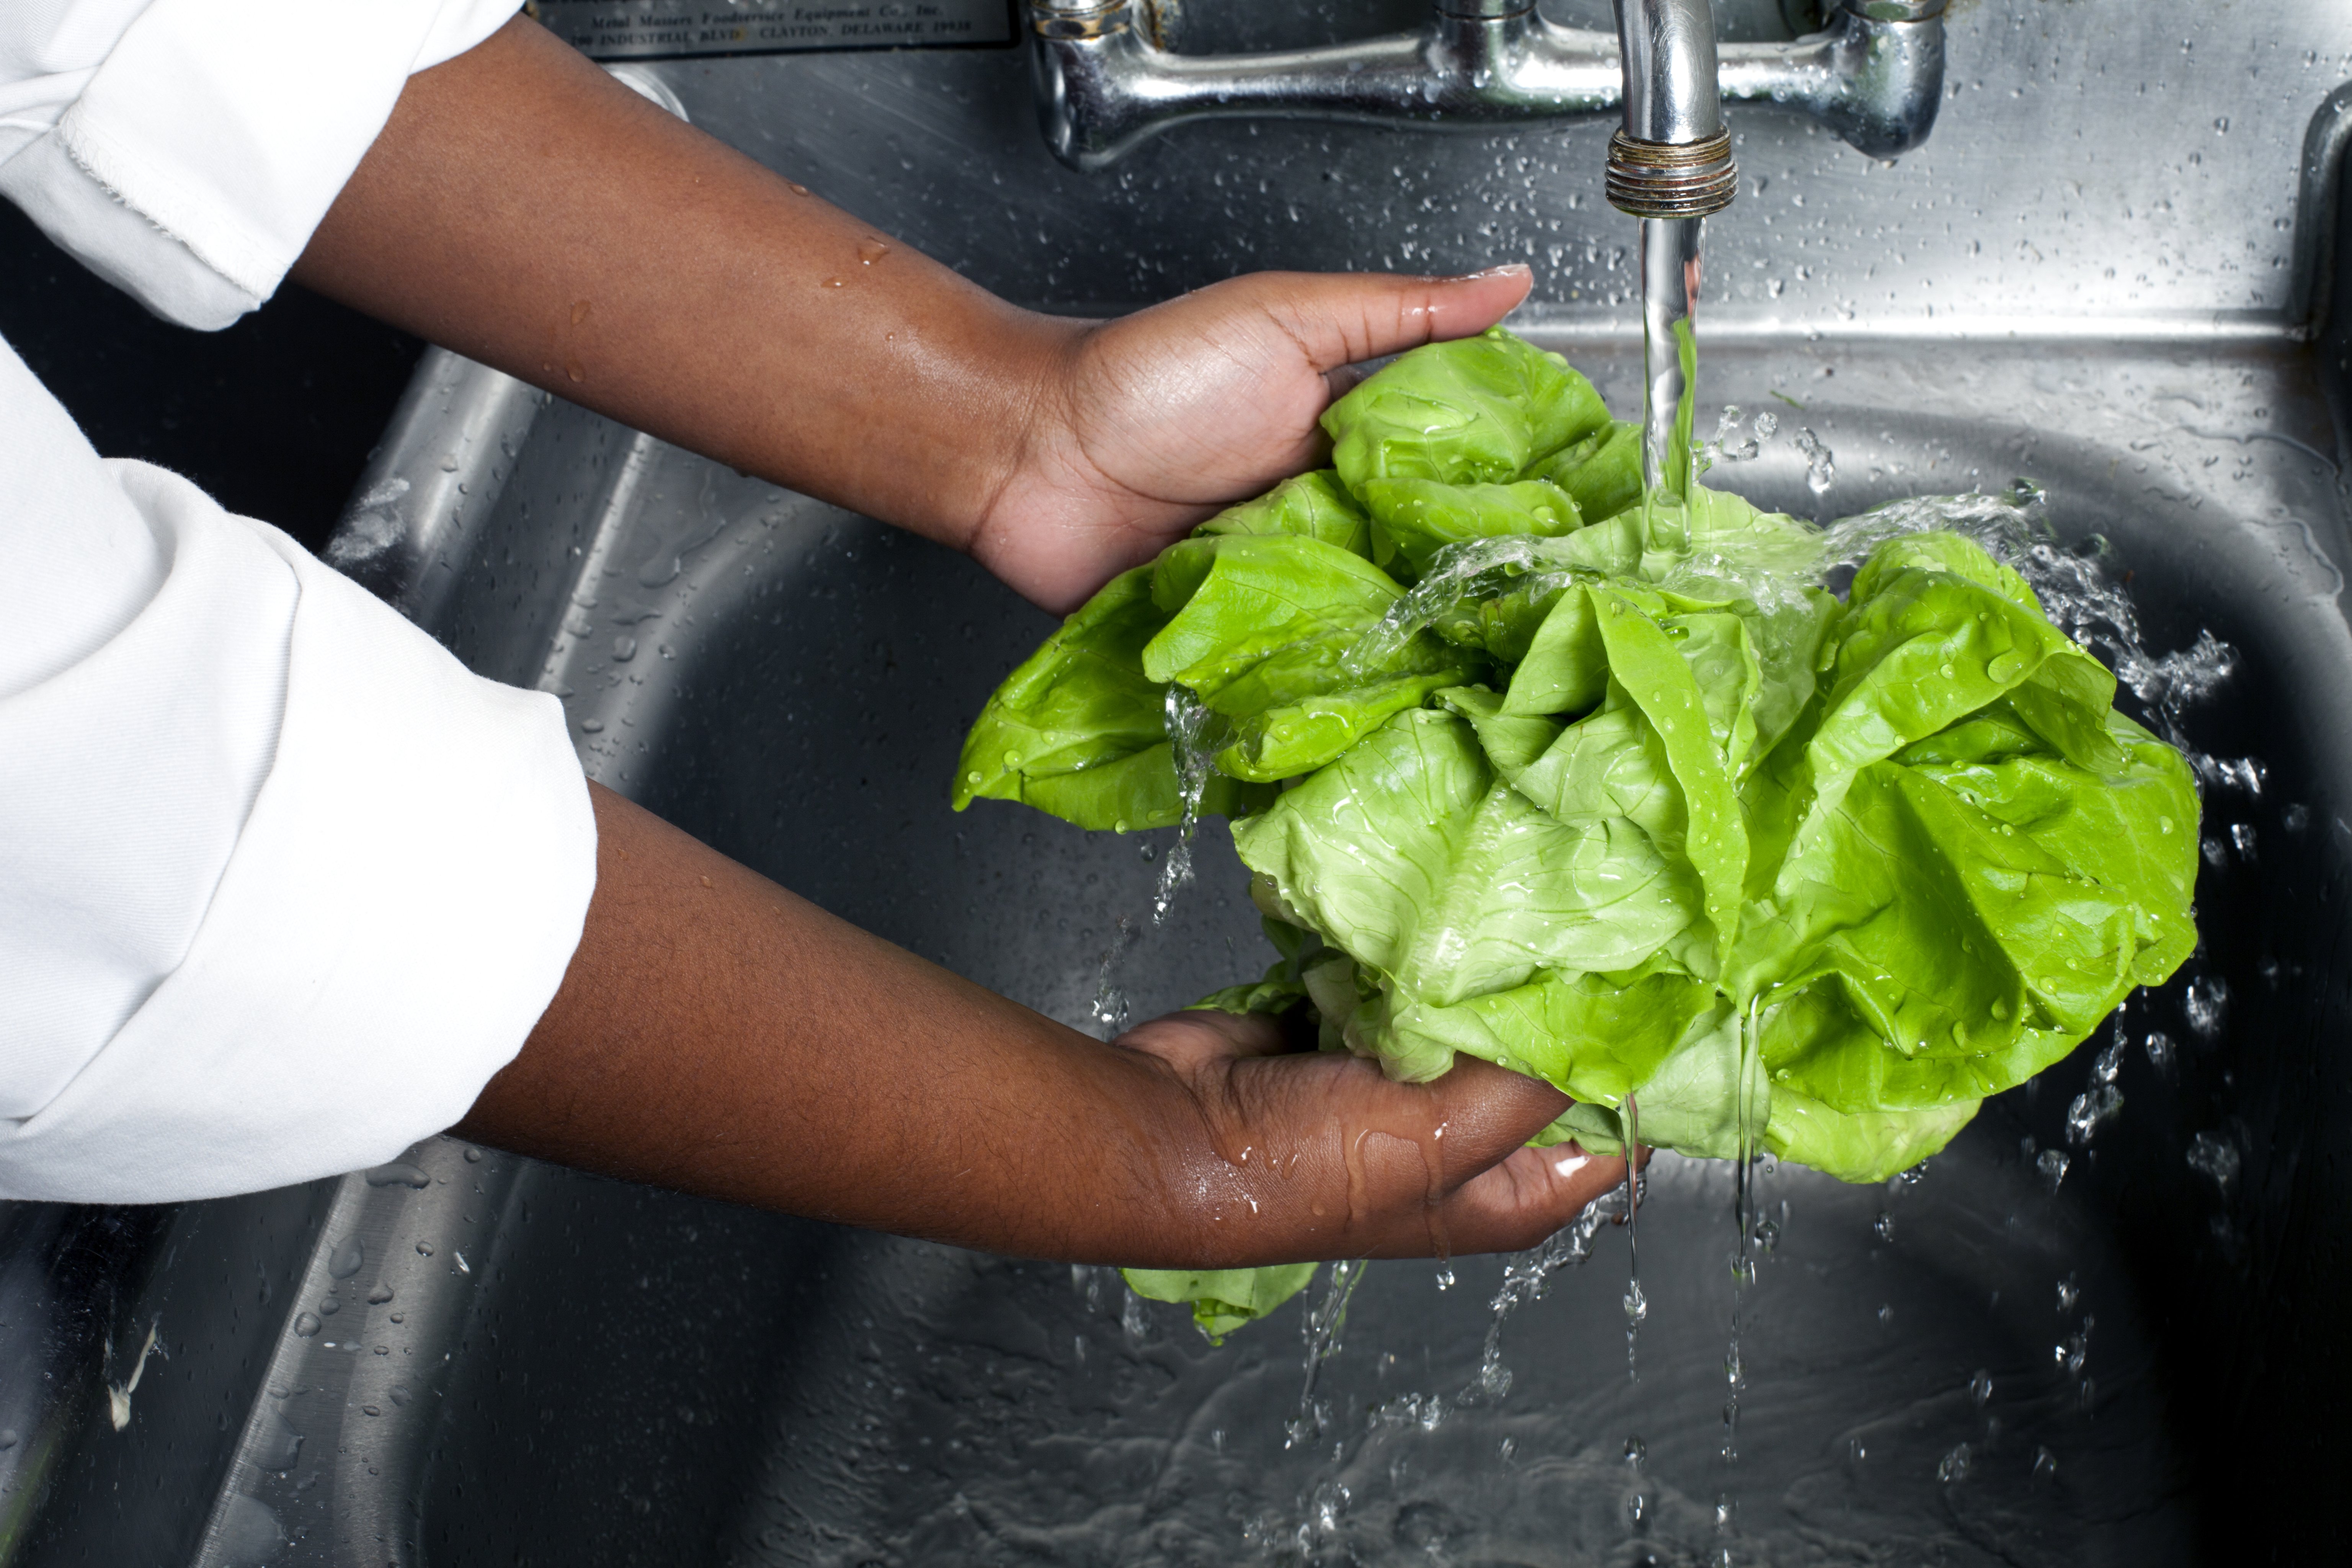 Chef washing Boston lettuce, produce|Photo: Getty Images